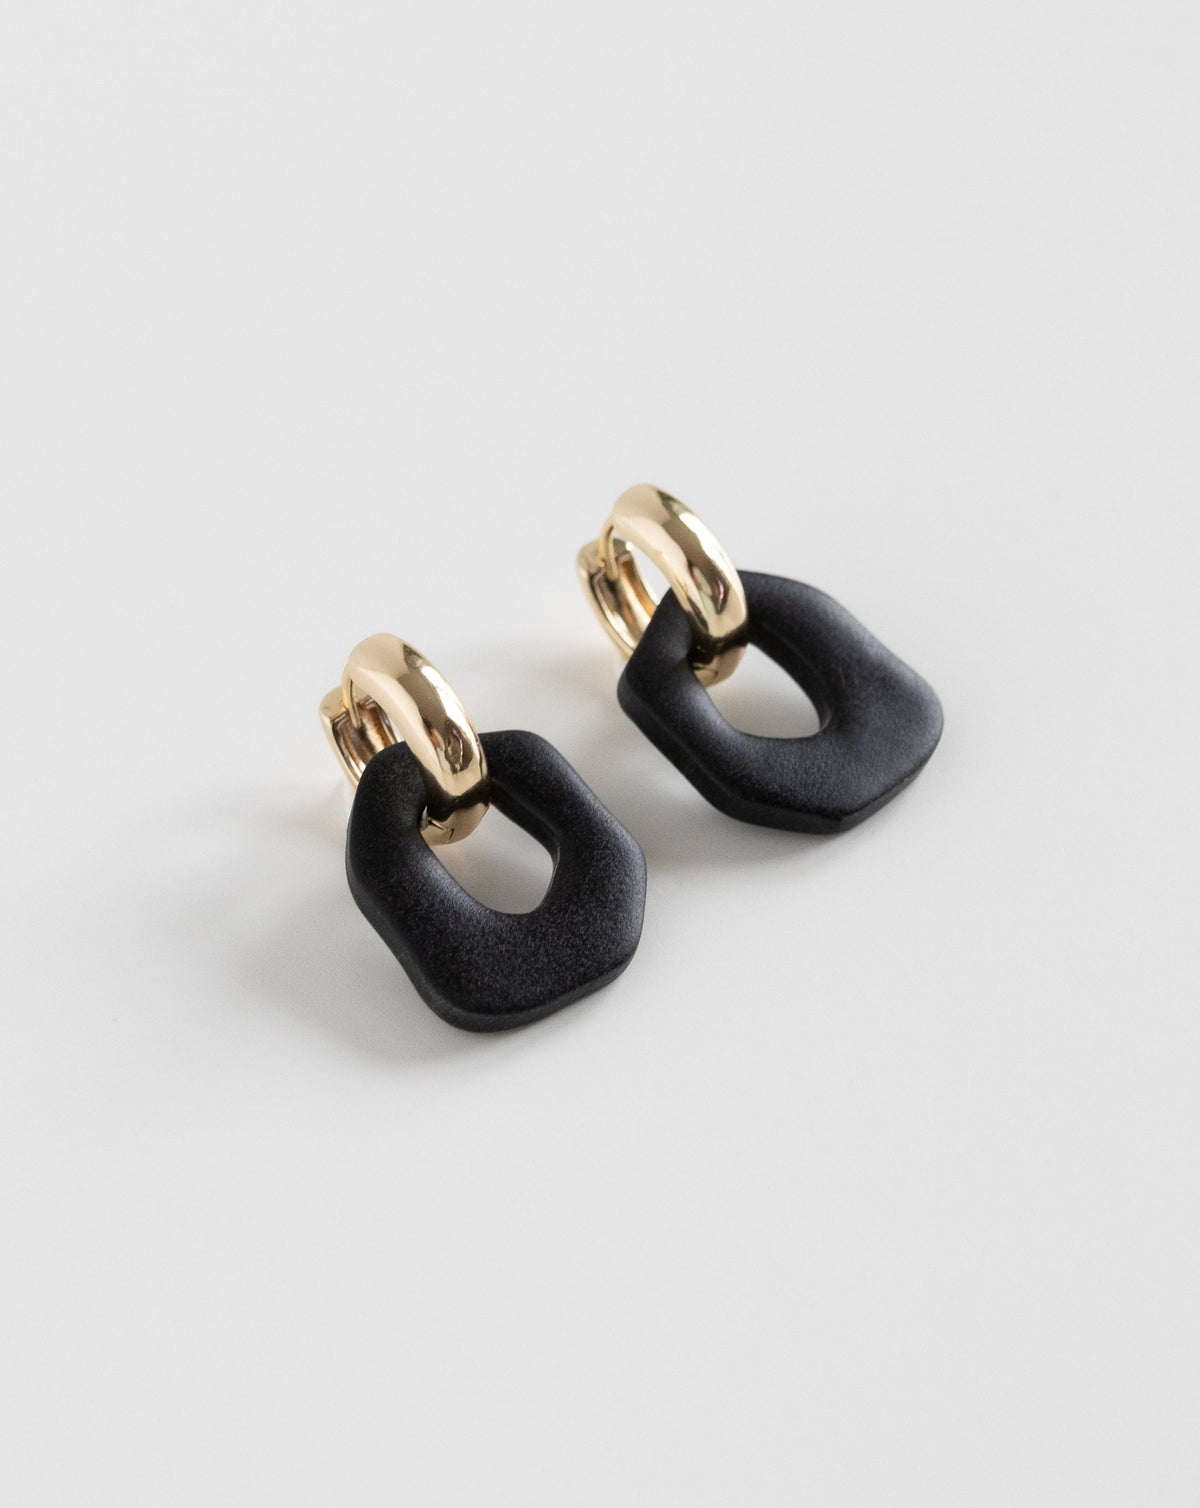 Darien earrings in Black color with gold hoops, side view